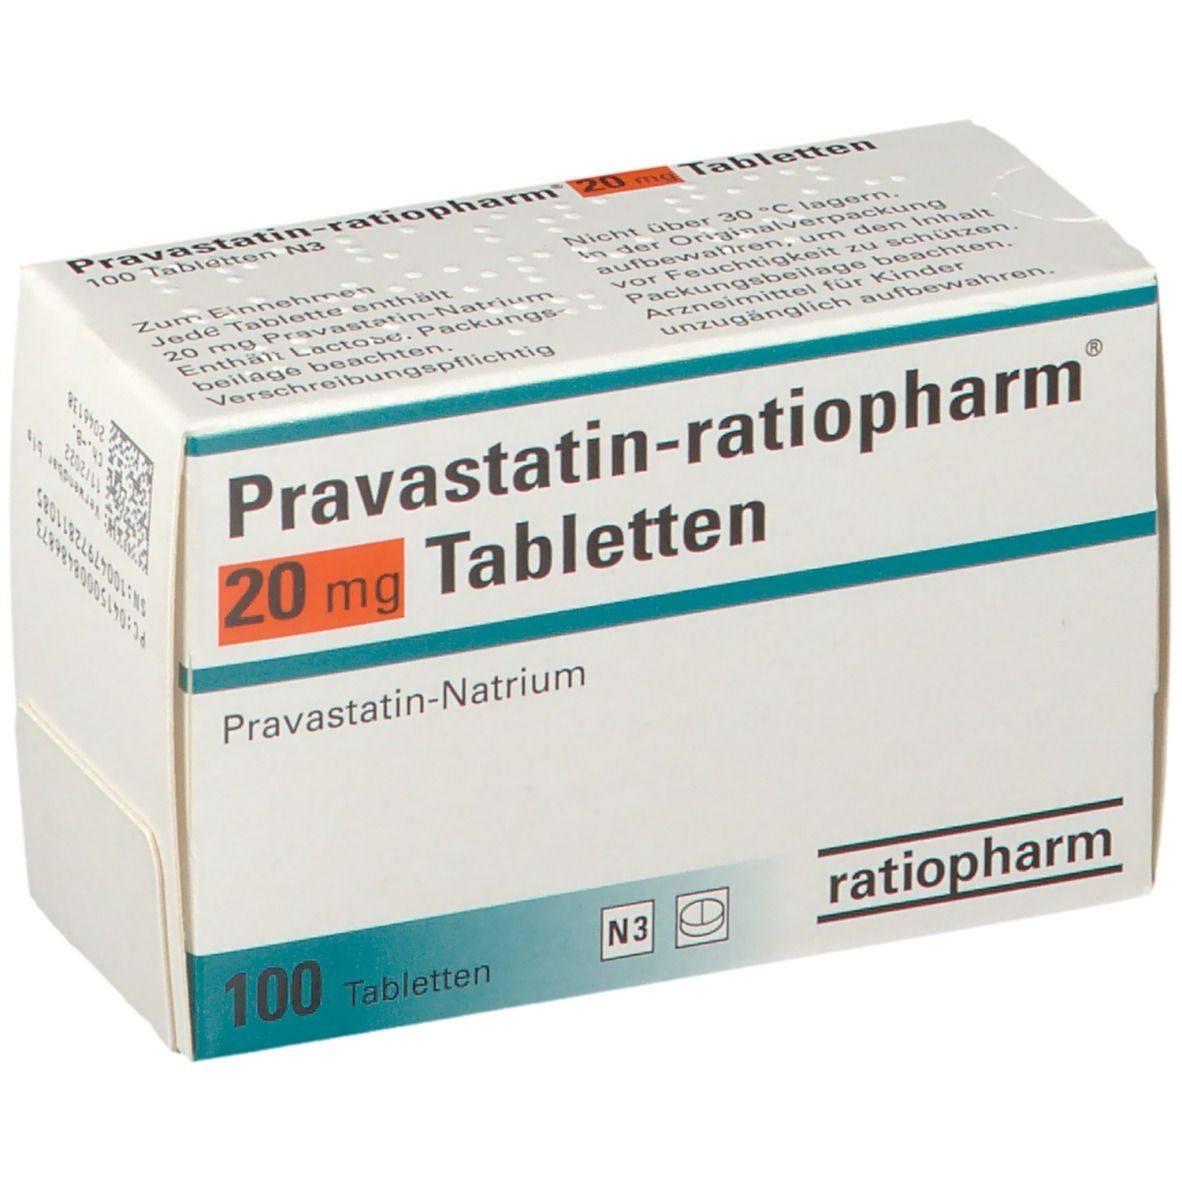 Pravastatin-ratiopharm® 20 mg